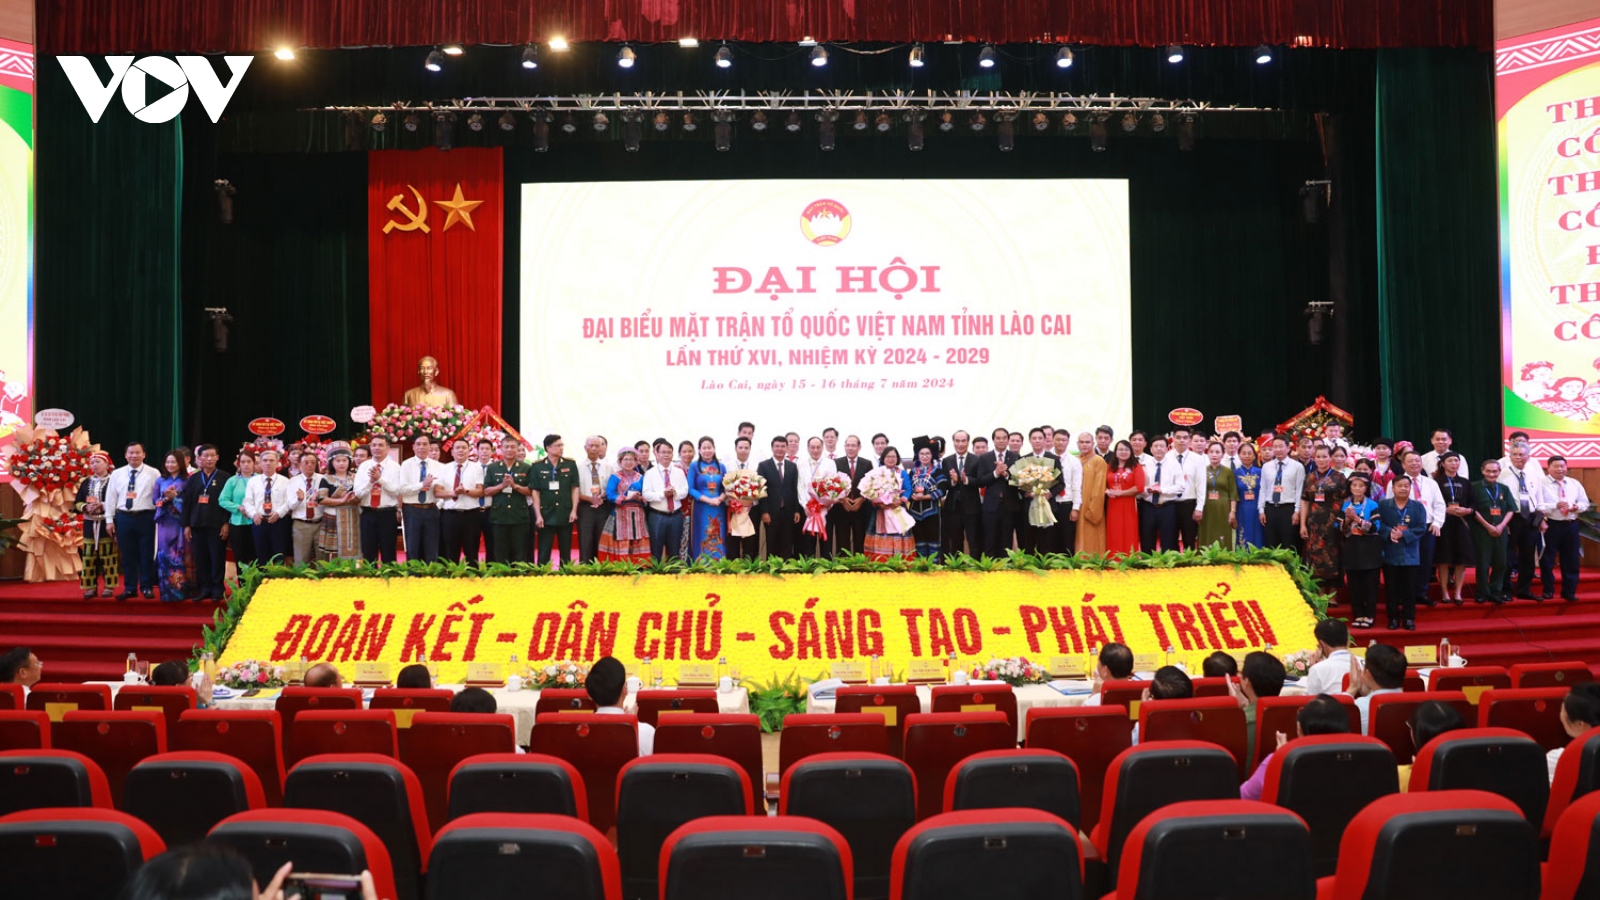 Ông Lý Văn Hải giữ chức Chủ tịch Ủy ban MTTQ Việt Nam tỉnh Lào Cai